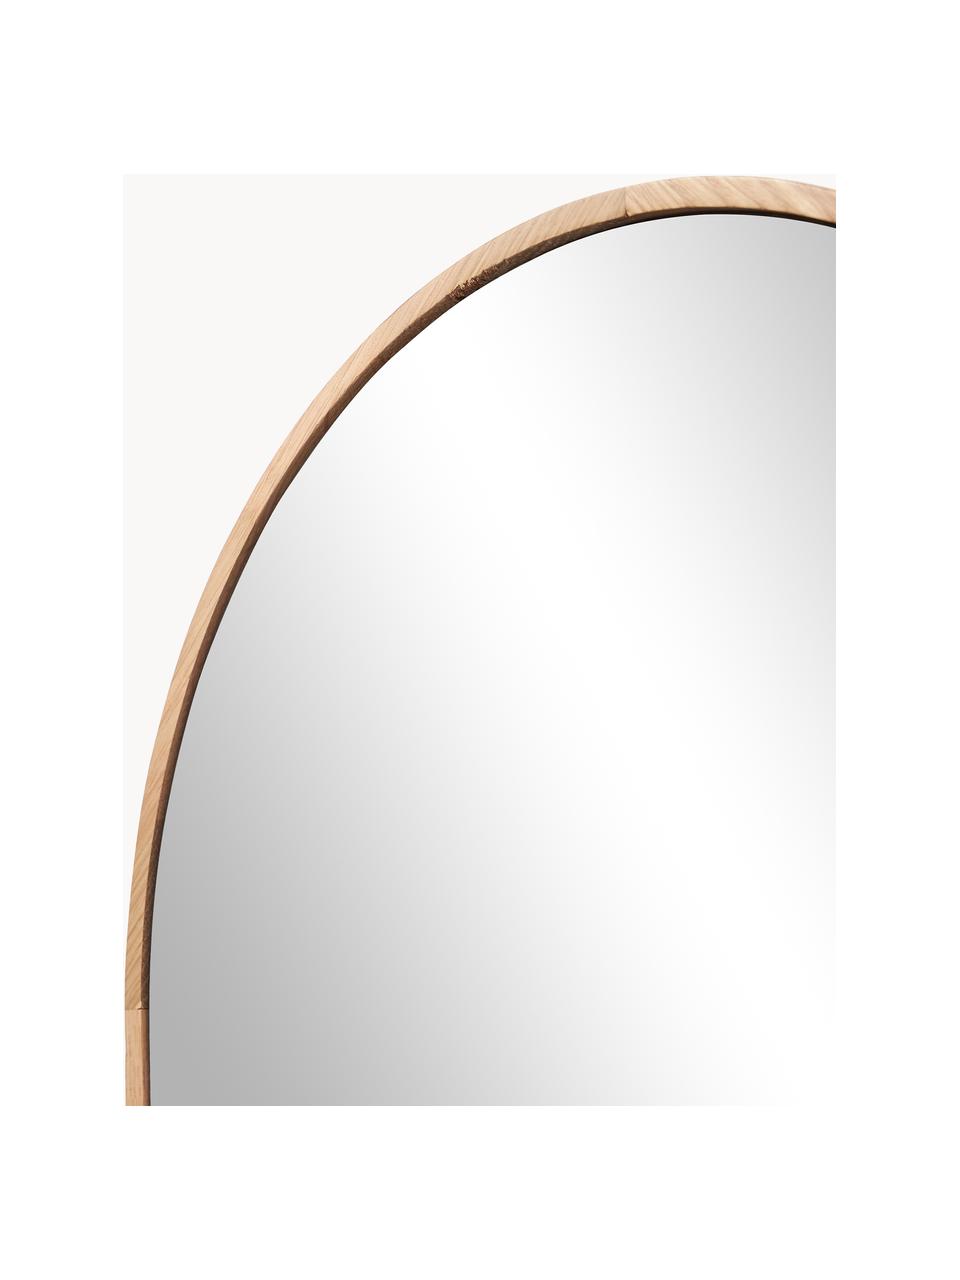 Oválné zrcadlo s dubovým rámem Avery, Dubové dřevo, Š 40 cm, V 140 cm